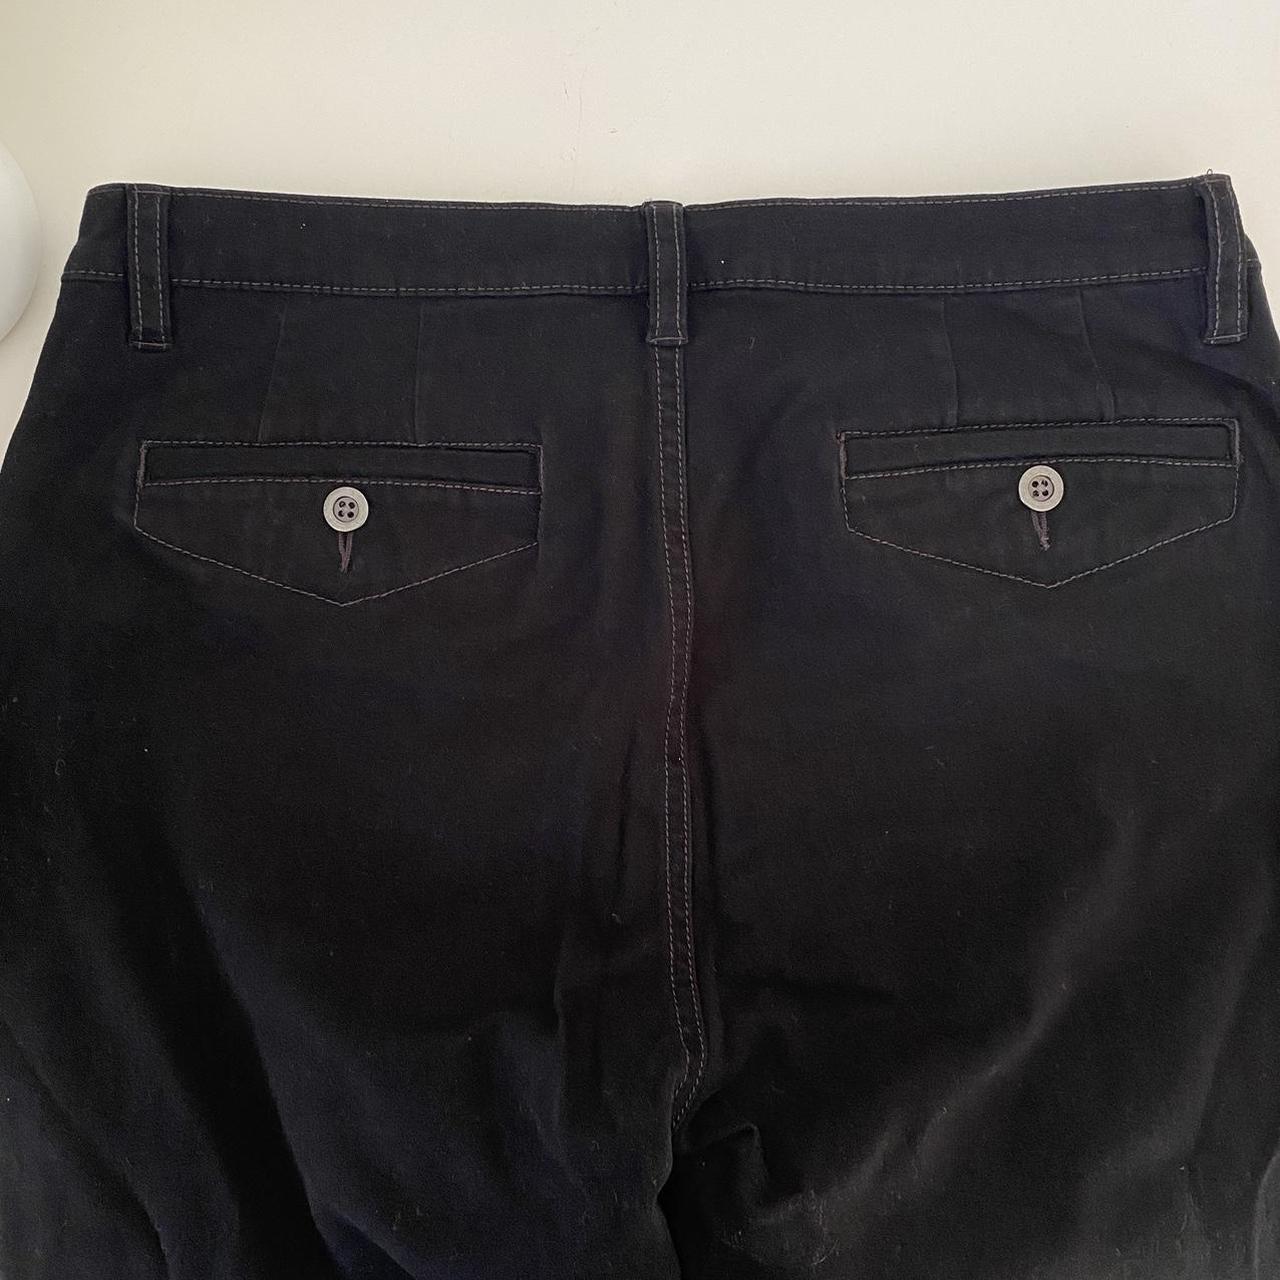 Orvis Pants Black velveteen-like pants Super soft - Depop